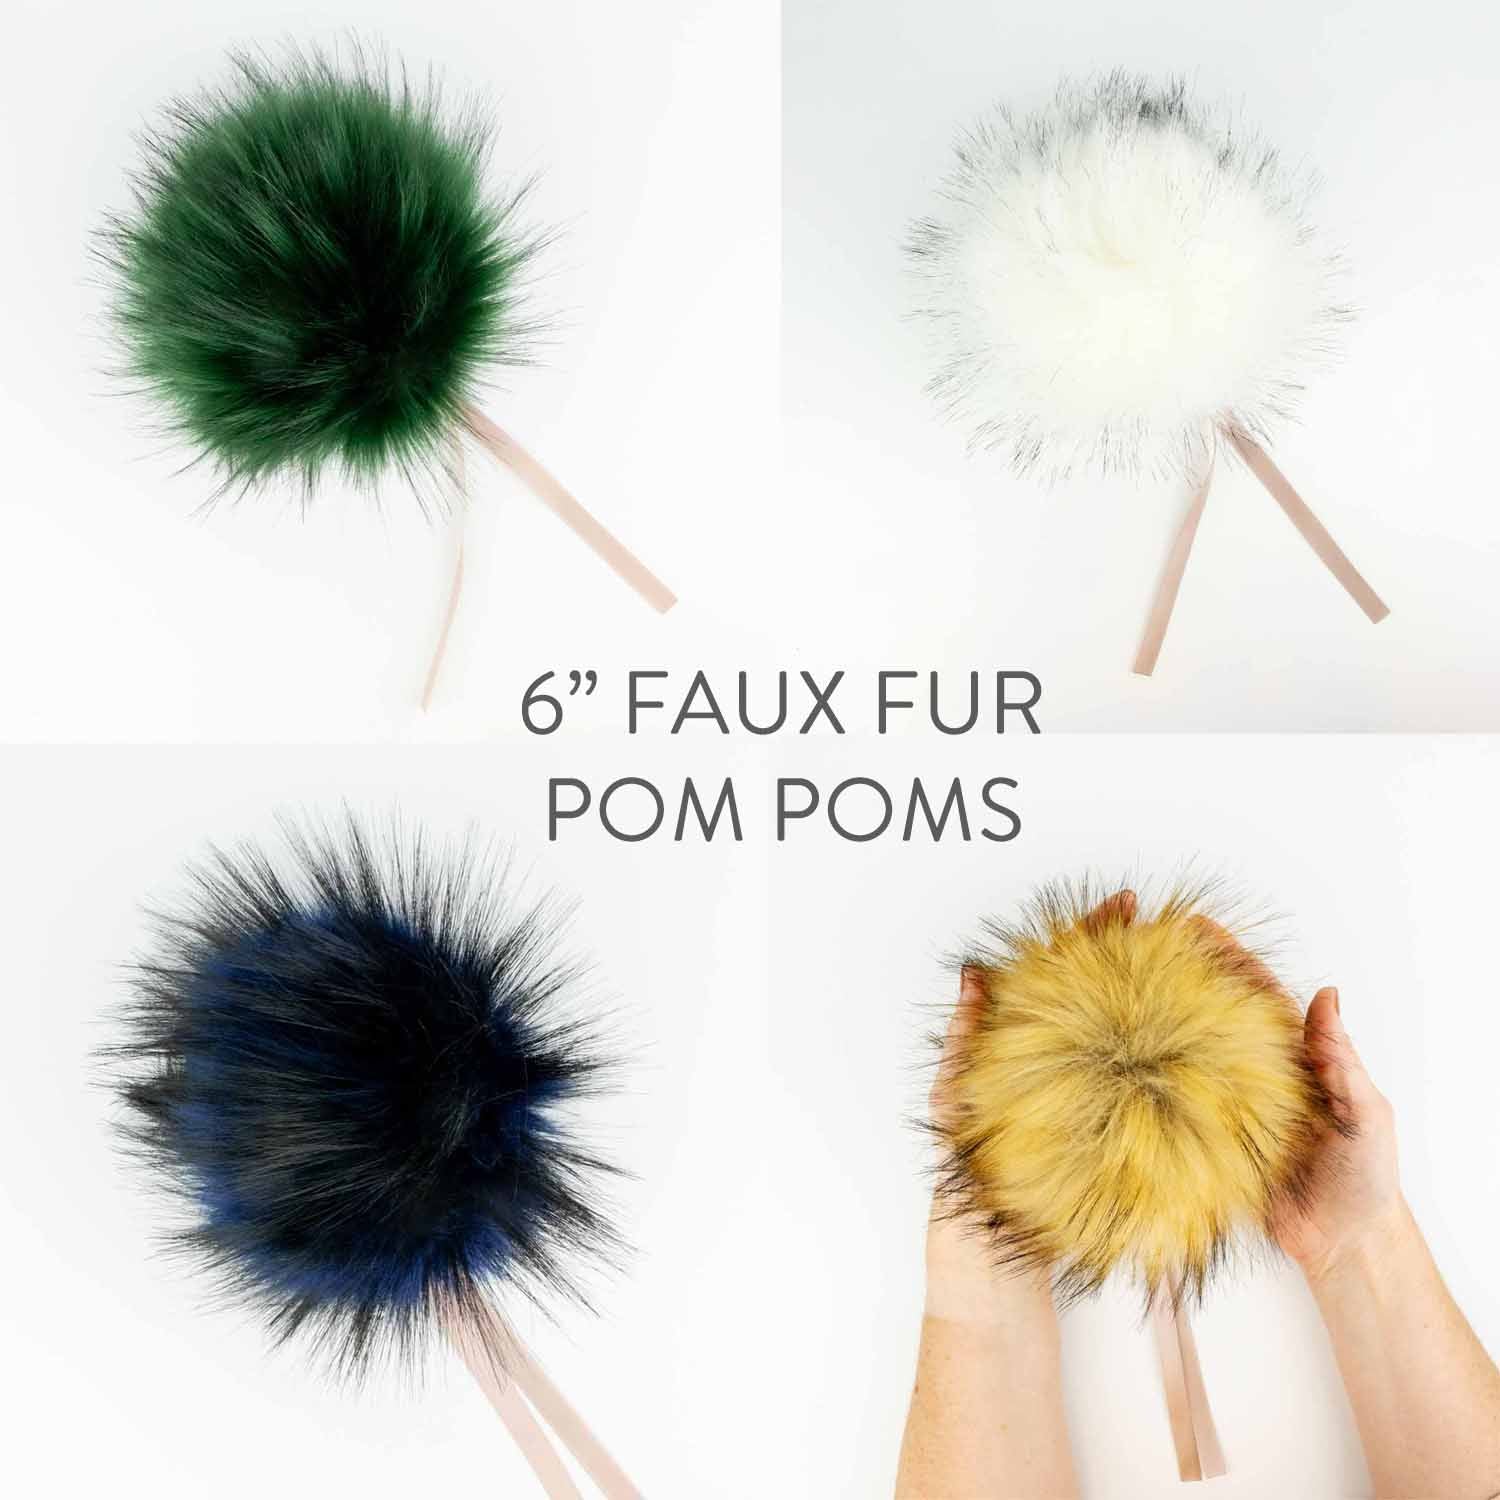 6" (15cm) Faux Fur Pom Pom